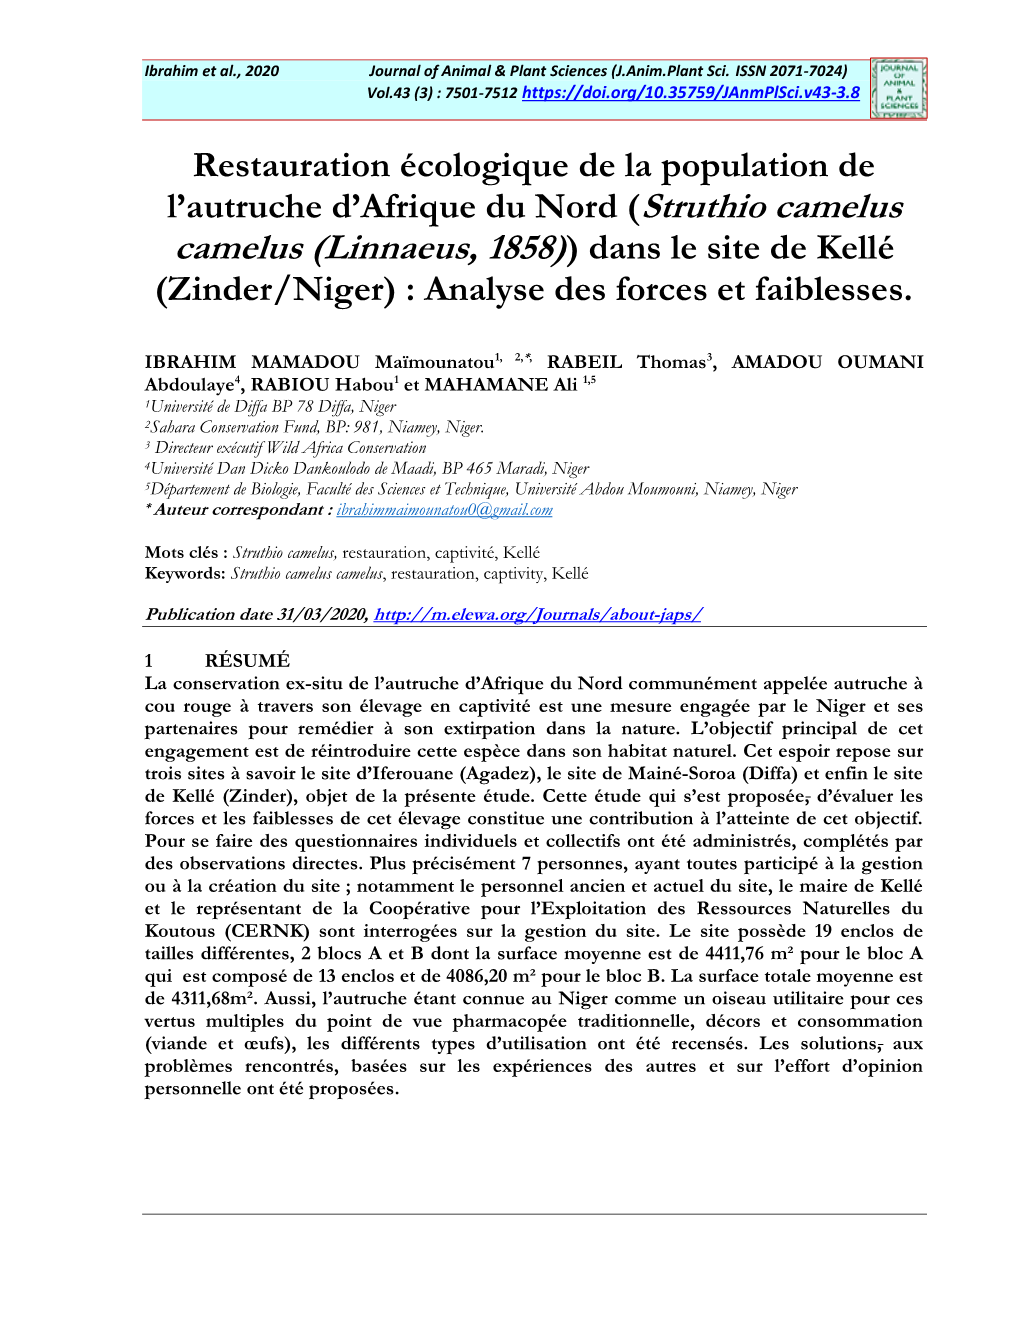 Camelus (Linnaeus, 1858)) Dans Le Site De Kellé (Zinder/Niger) : Analyse Des Forces Et Faiblesses